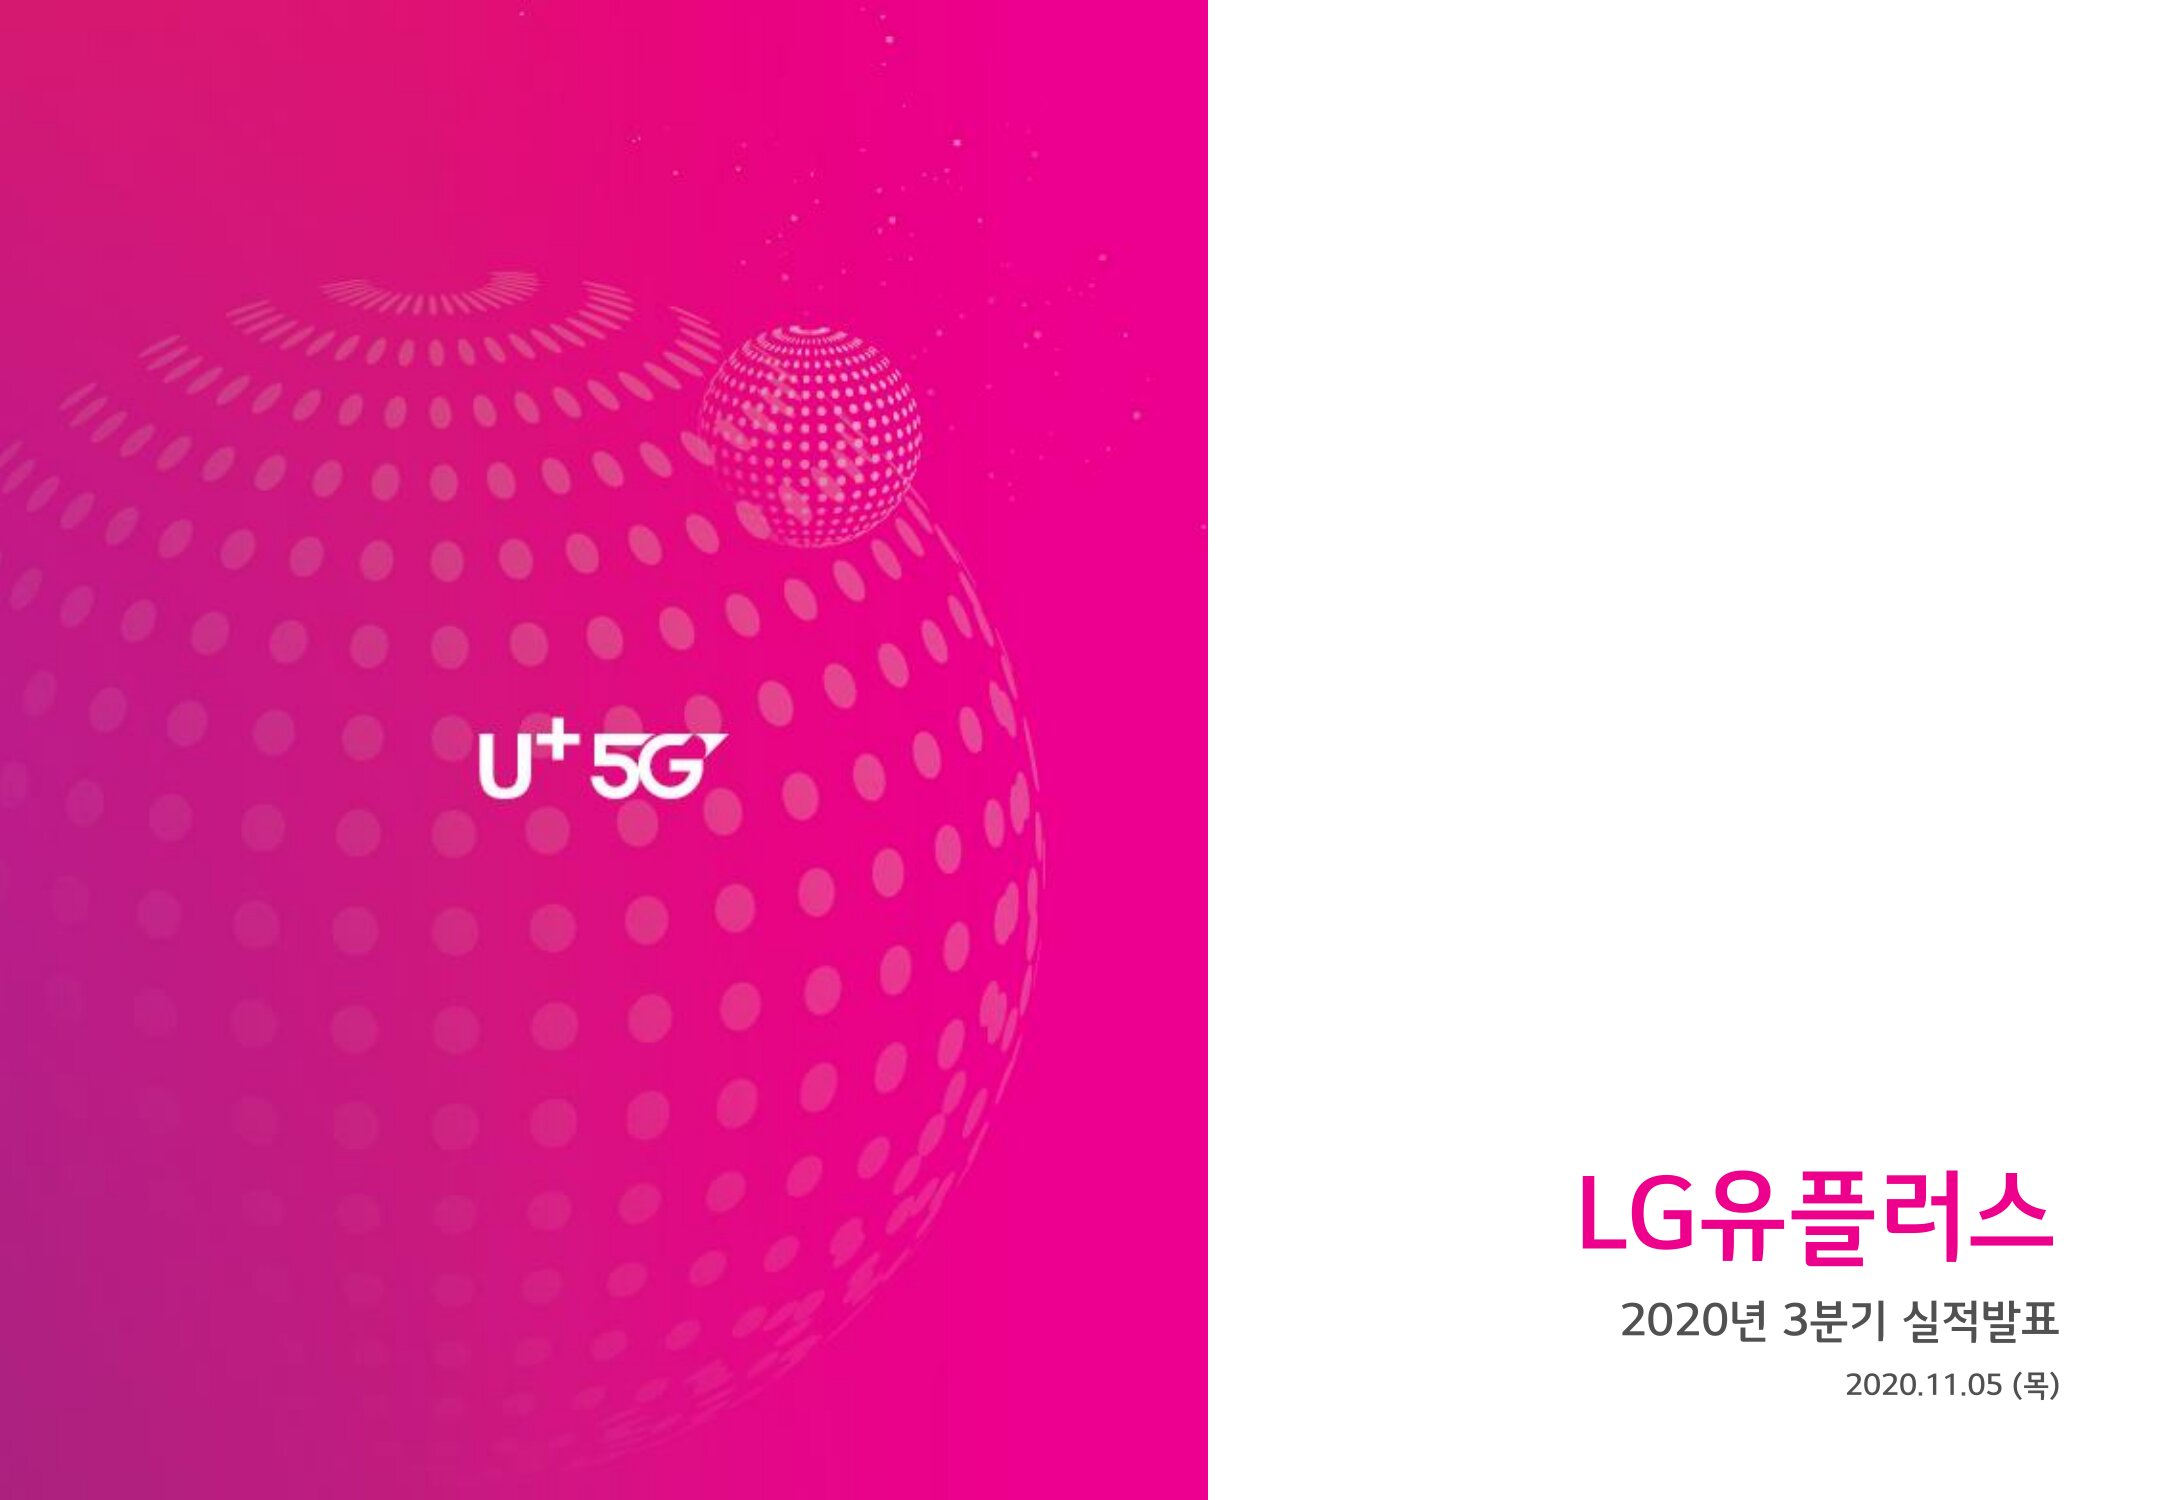 LG Uplus_3Q20_Earnings Release_KOR_Final_0001.jpg